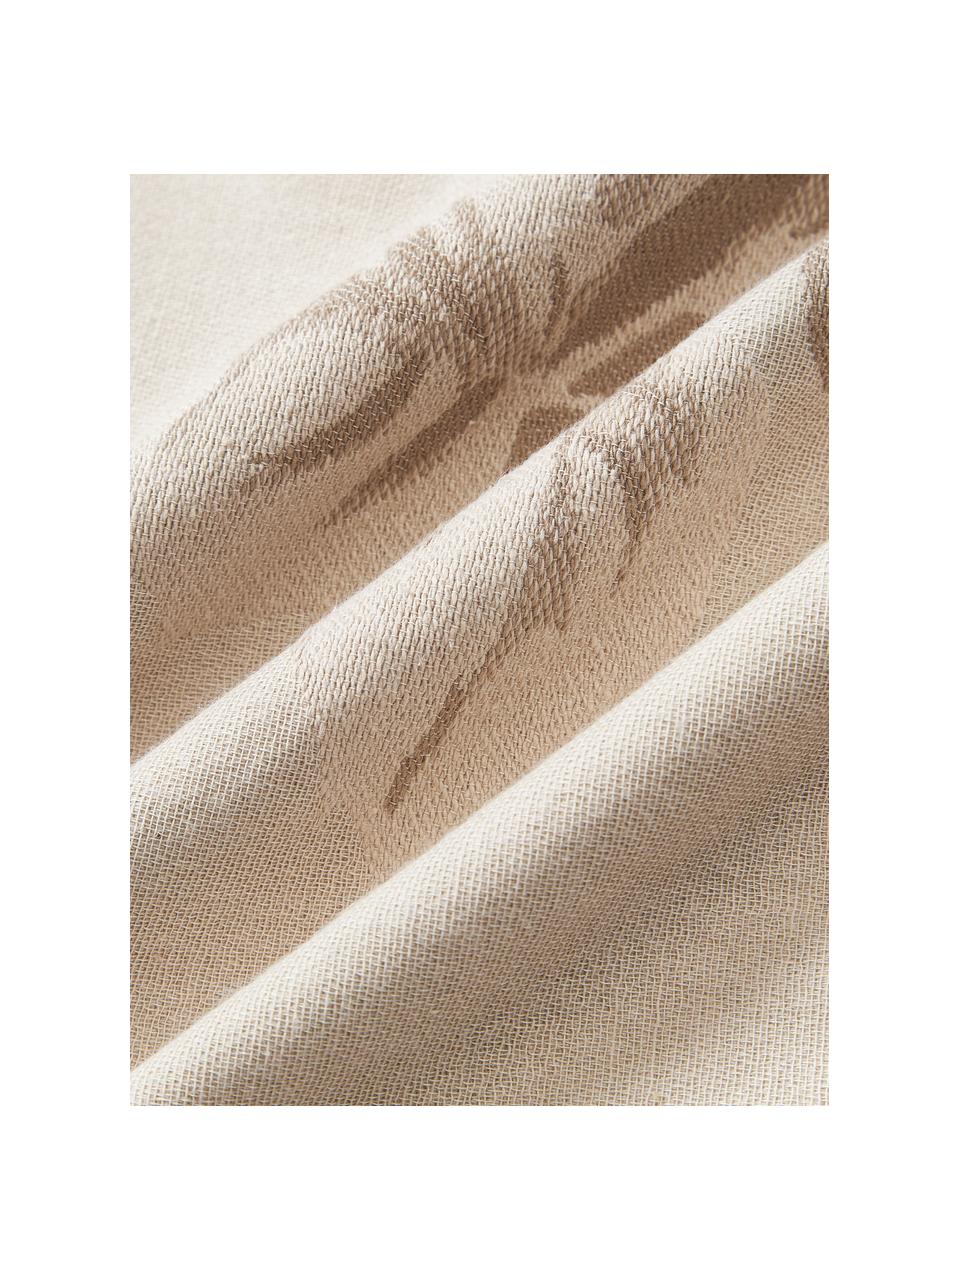 Copricuscino in cotone con motivo jacquard Breight, 100% cotone, Marrone, beige, Larg. 50 x Lung. 50 cm